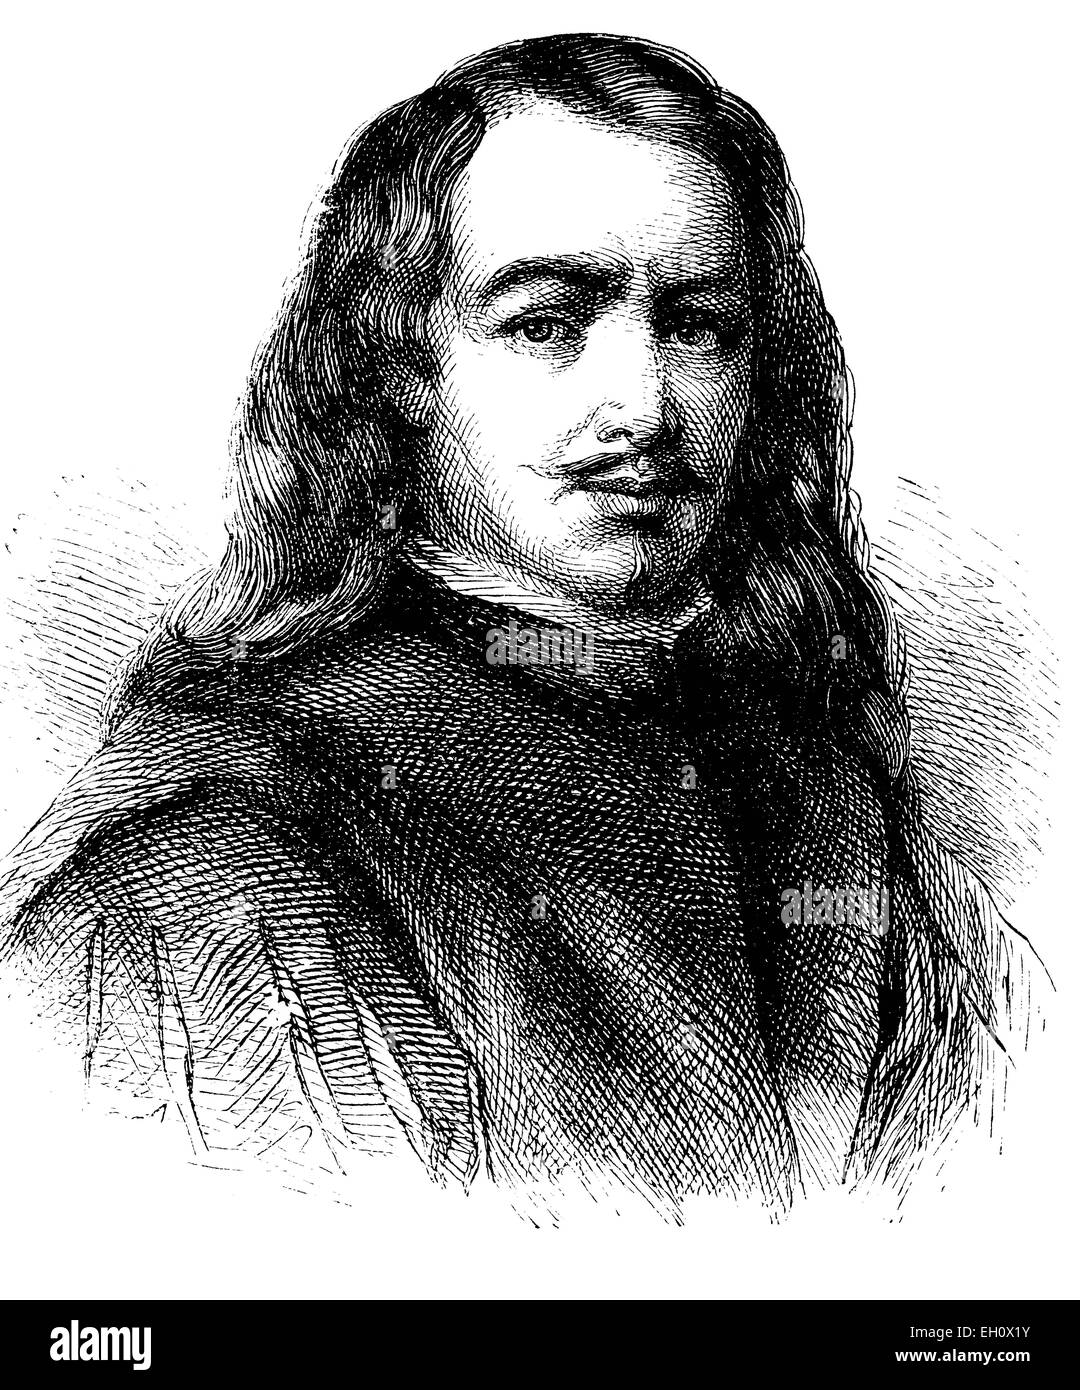 Bartolomé Esteban Murillo (1618-1682), peintre espagnol, illustration historique, vers 1886 Banque D'Images